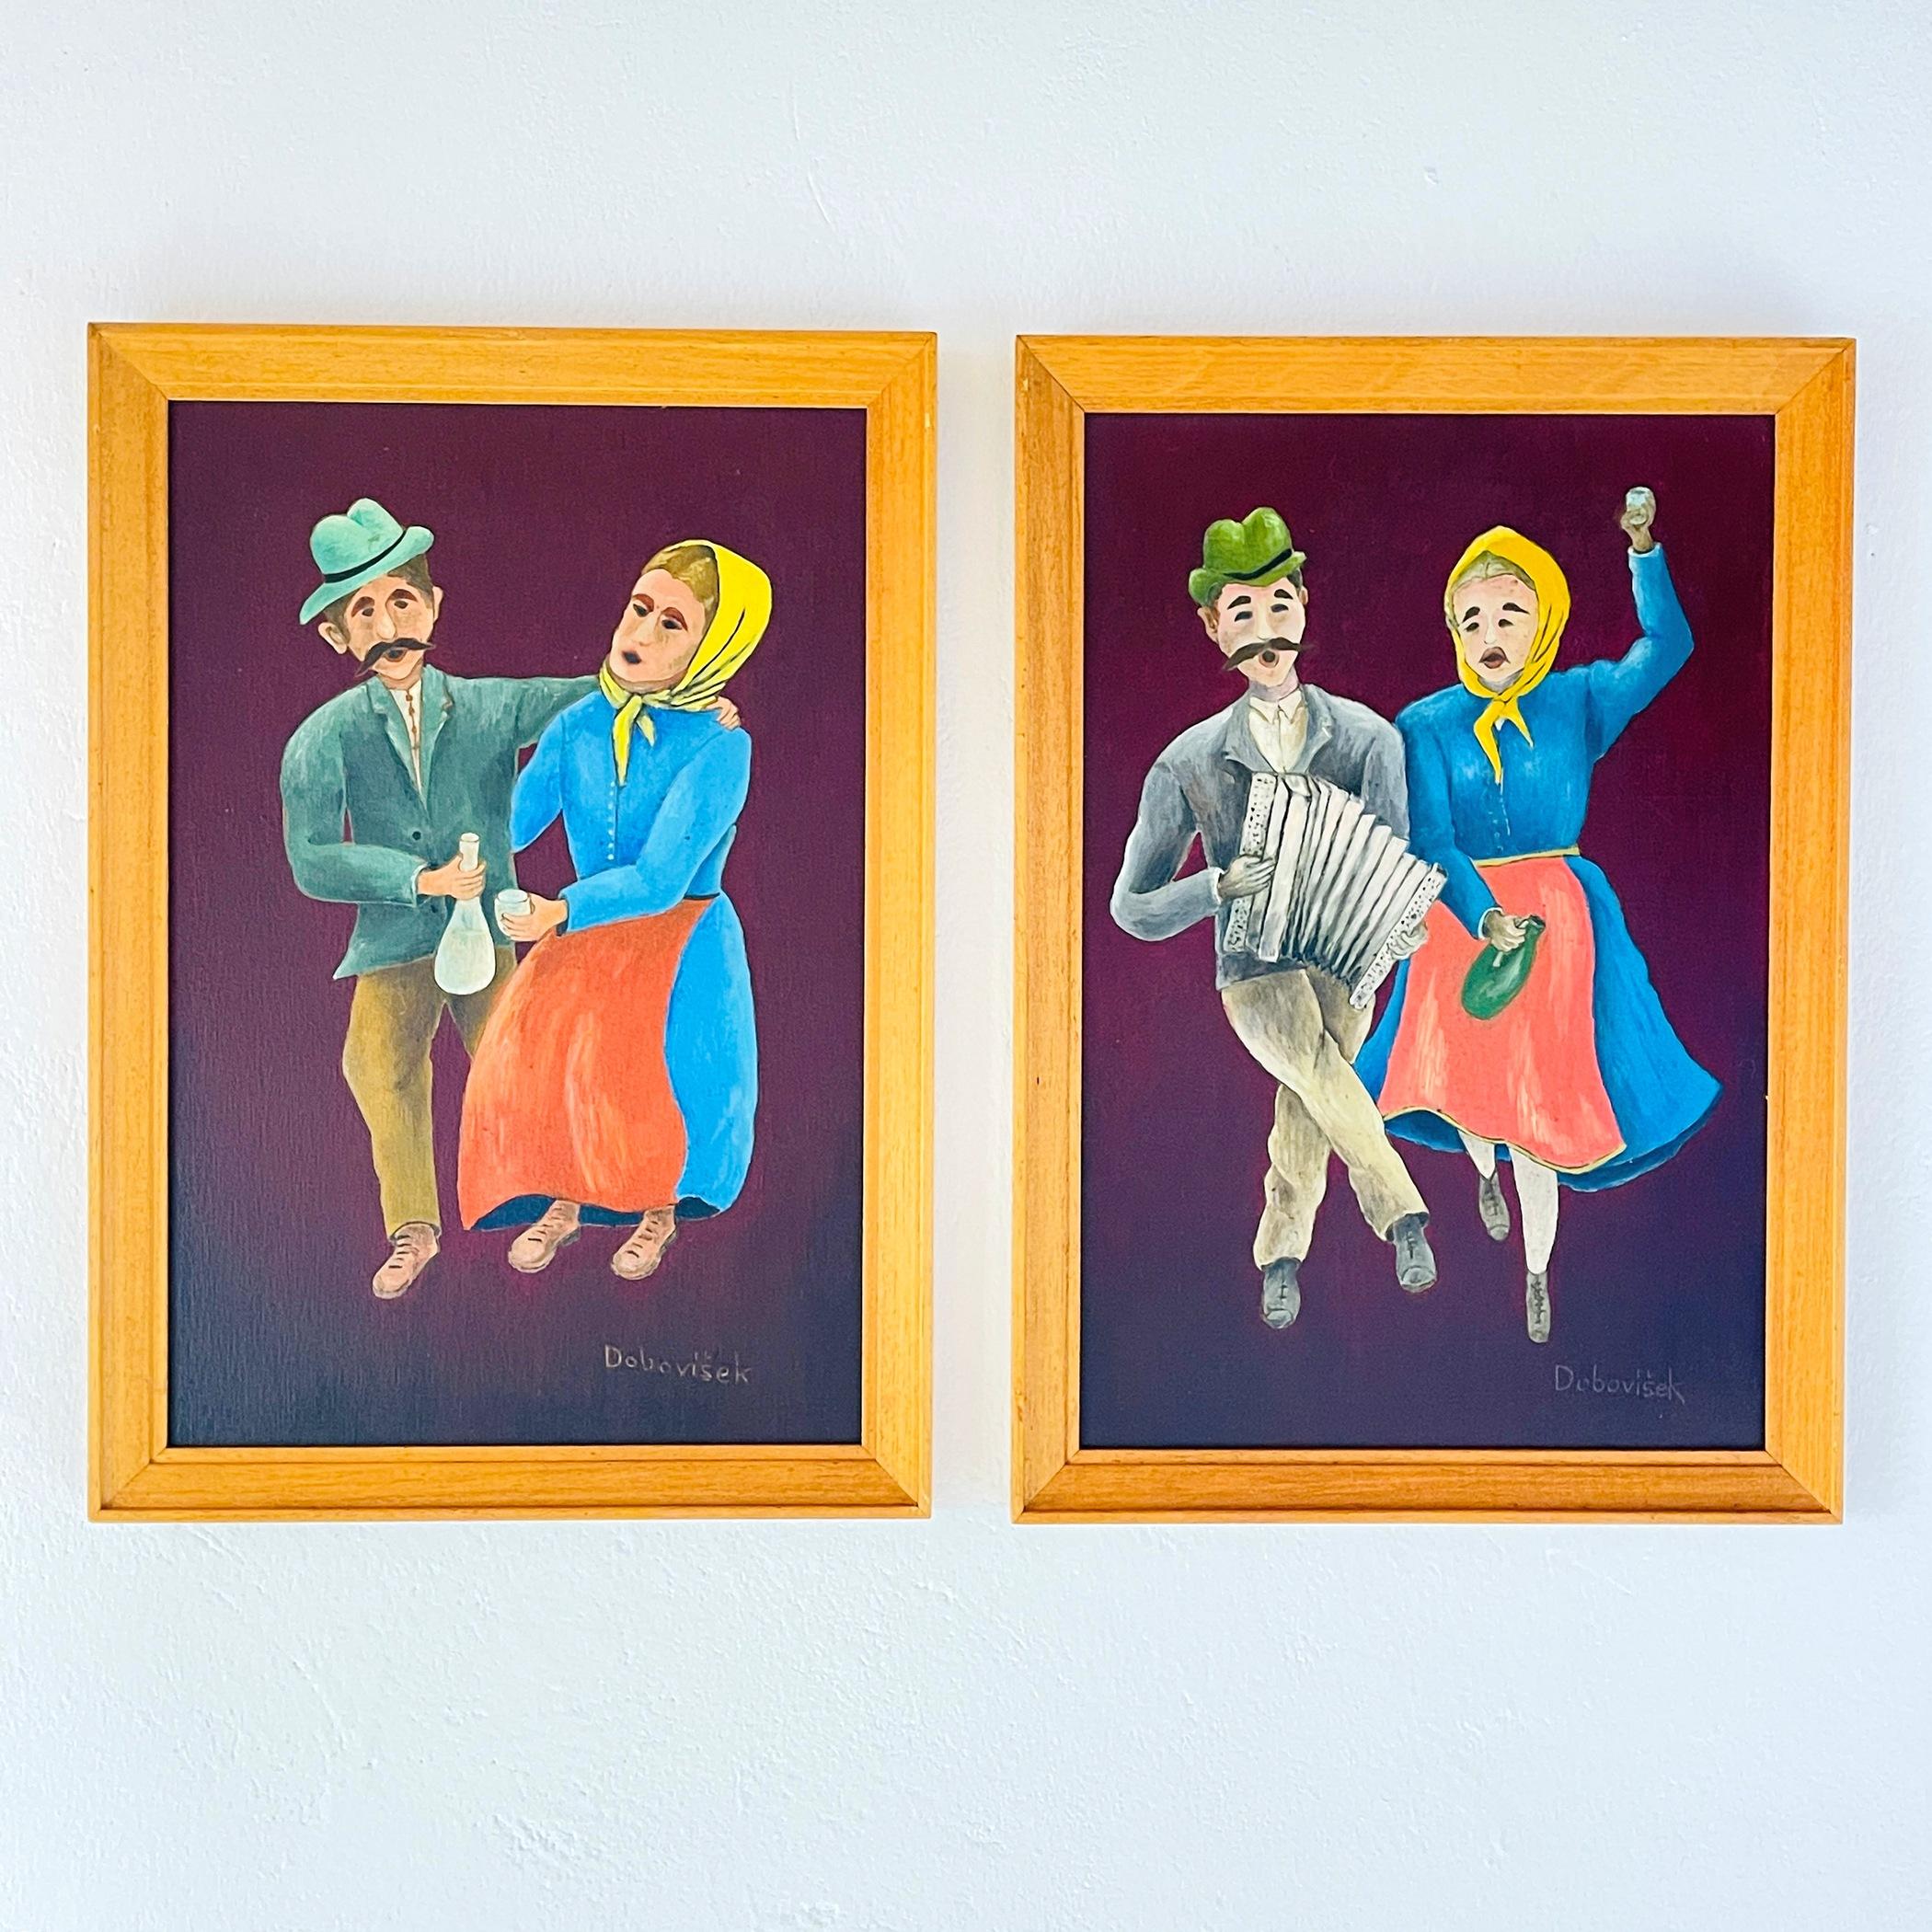 Plongez dans le monde charmant et fantasque de la vie rurale avec cet ensemble captivant de deux peintures en diptyque de style Art naïf d'Oto Dobovišek, un artiste de Yougoslavie des années 1970. Ces délicieuses œuvres d'art populaire représentent